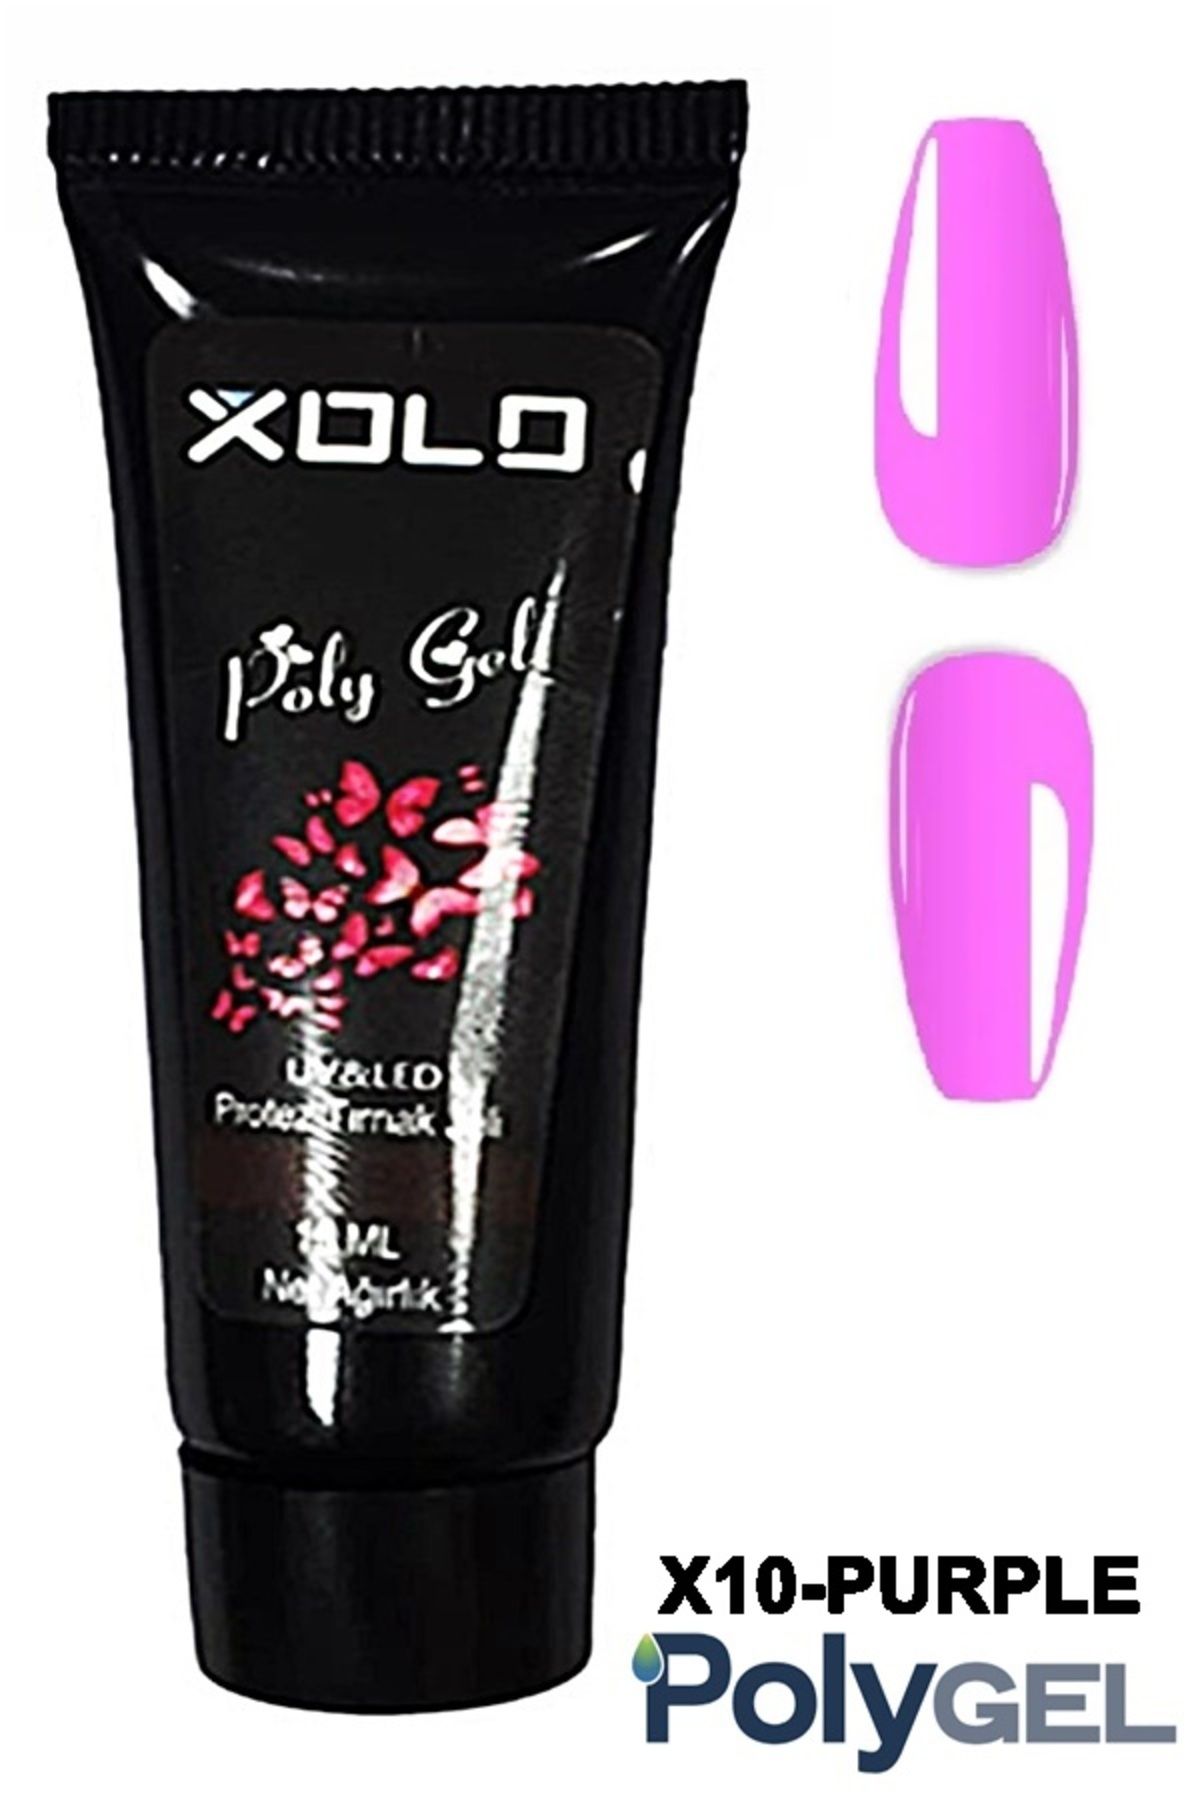 Xolo Polygel Protez Tırnak Oje Kalıcı Akrilik Trend Renkler Serisi Jel Polijel Poly Gel 15 ml